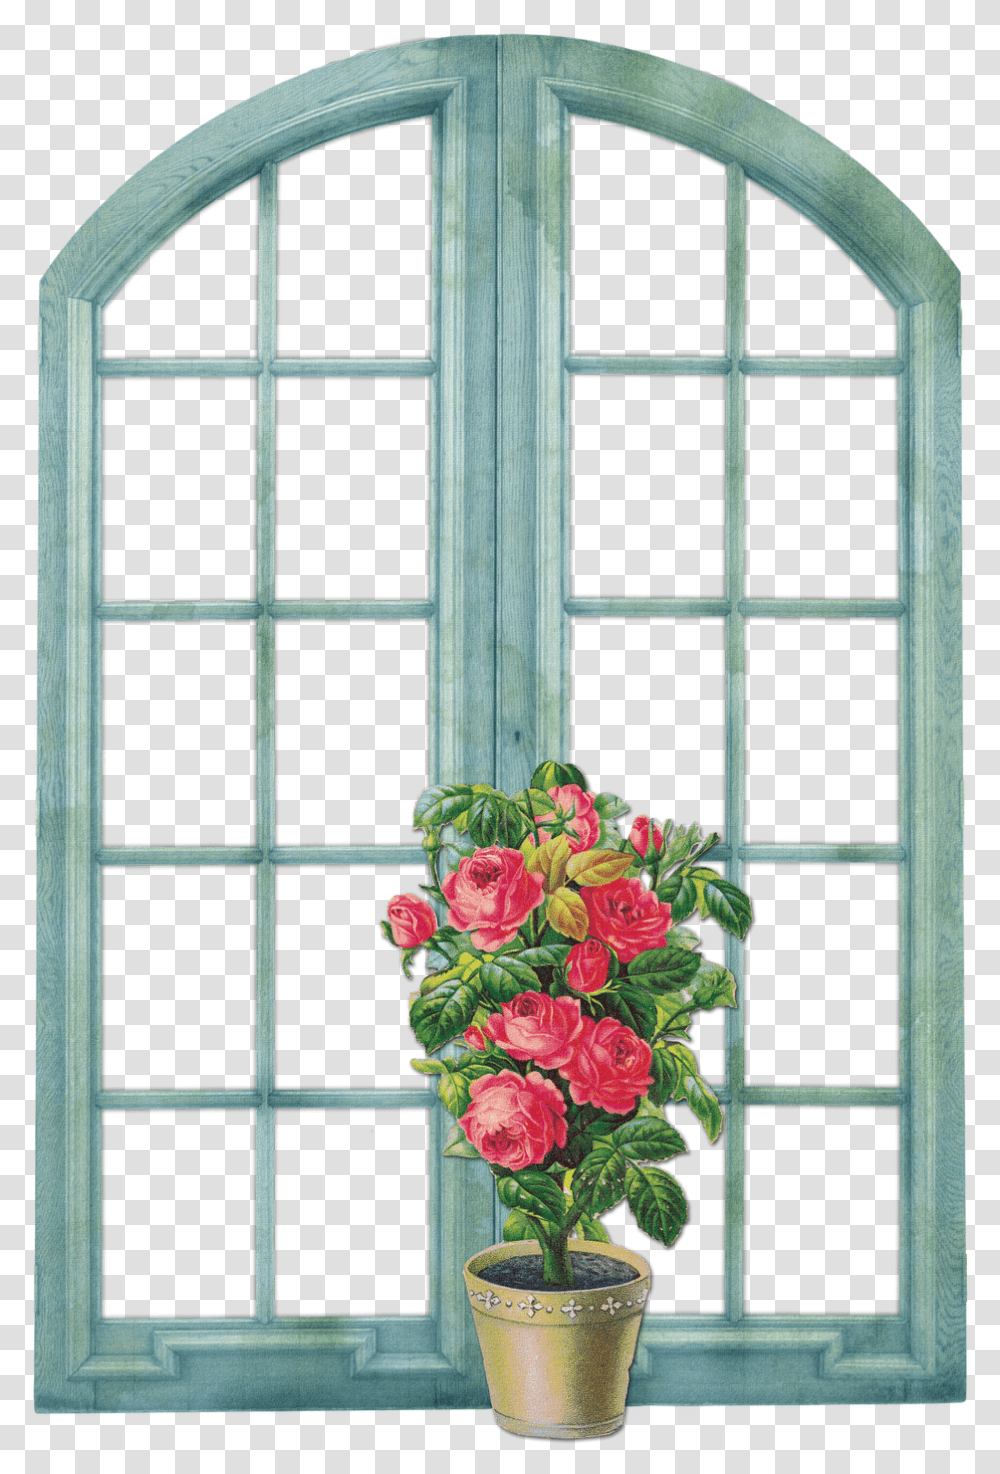 Floral Theme Vintage Backgrounds Background Vintage Window By Picsart, Plant, Flower, Blossom, Geranium Transparent Png